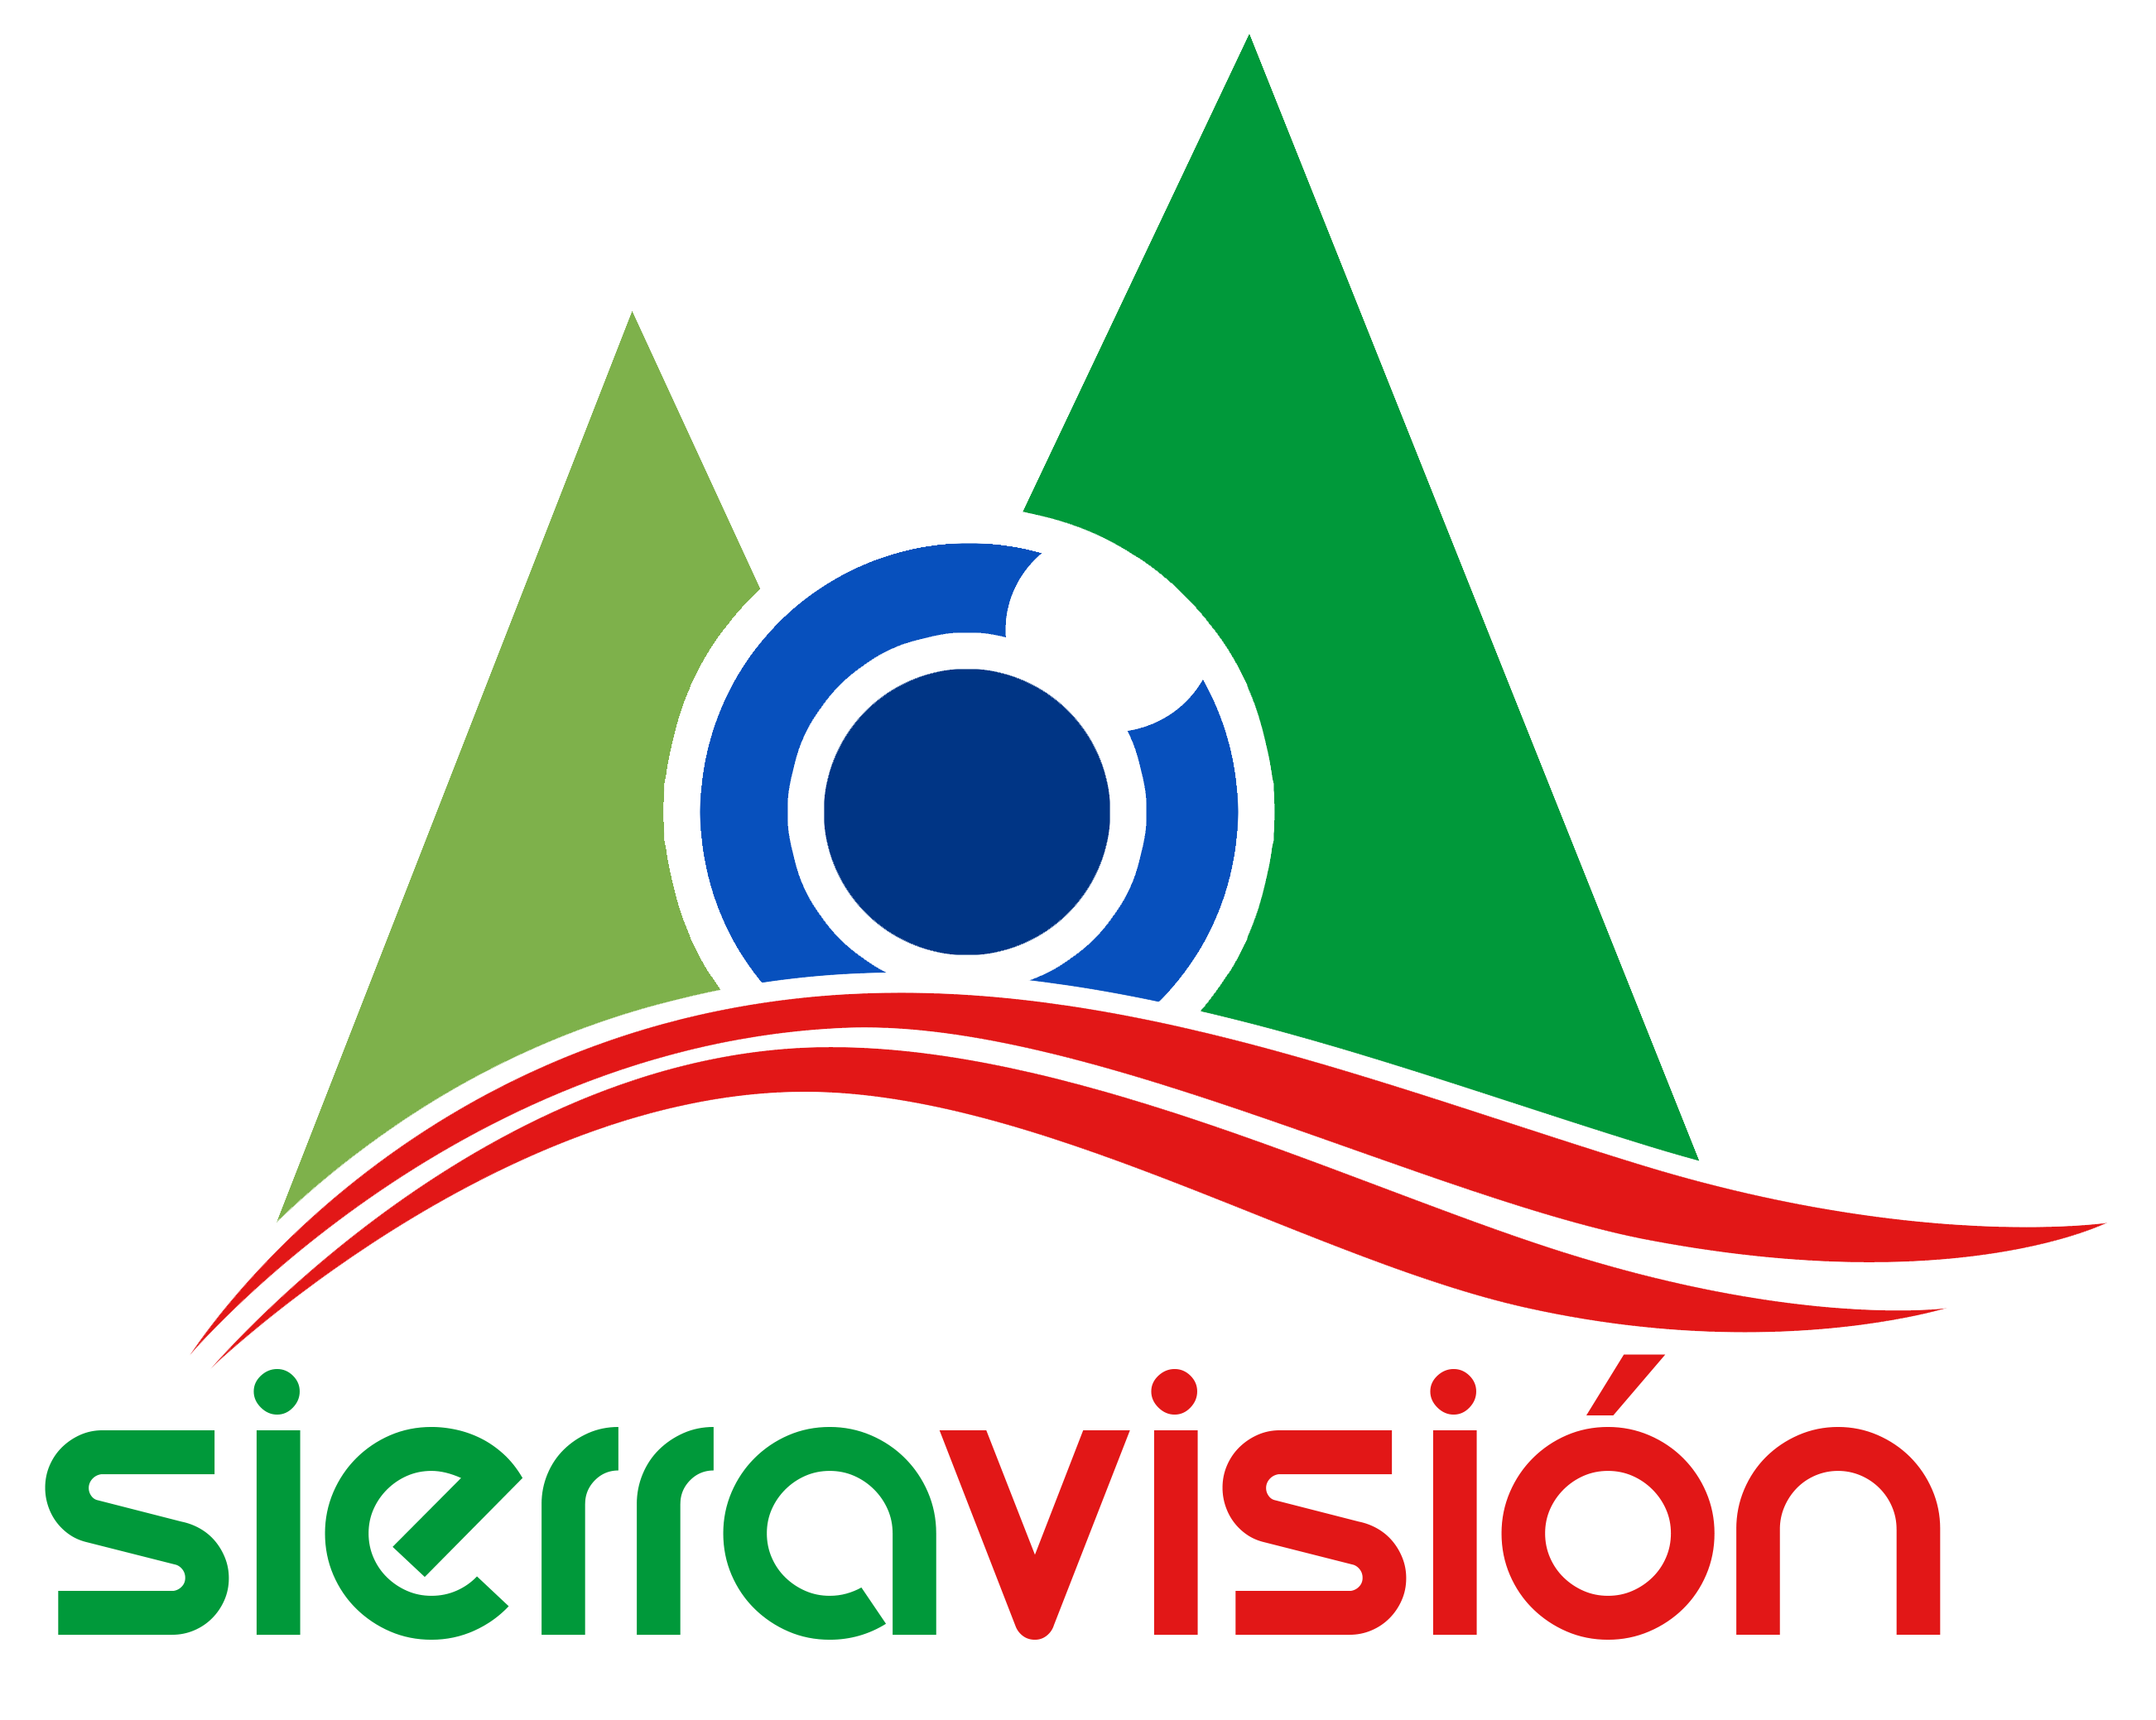 Sierravisión